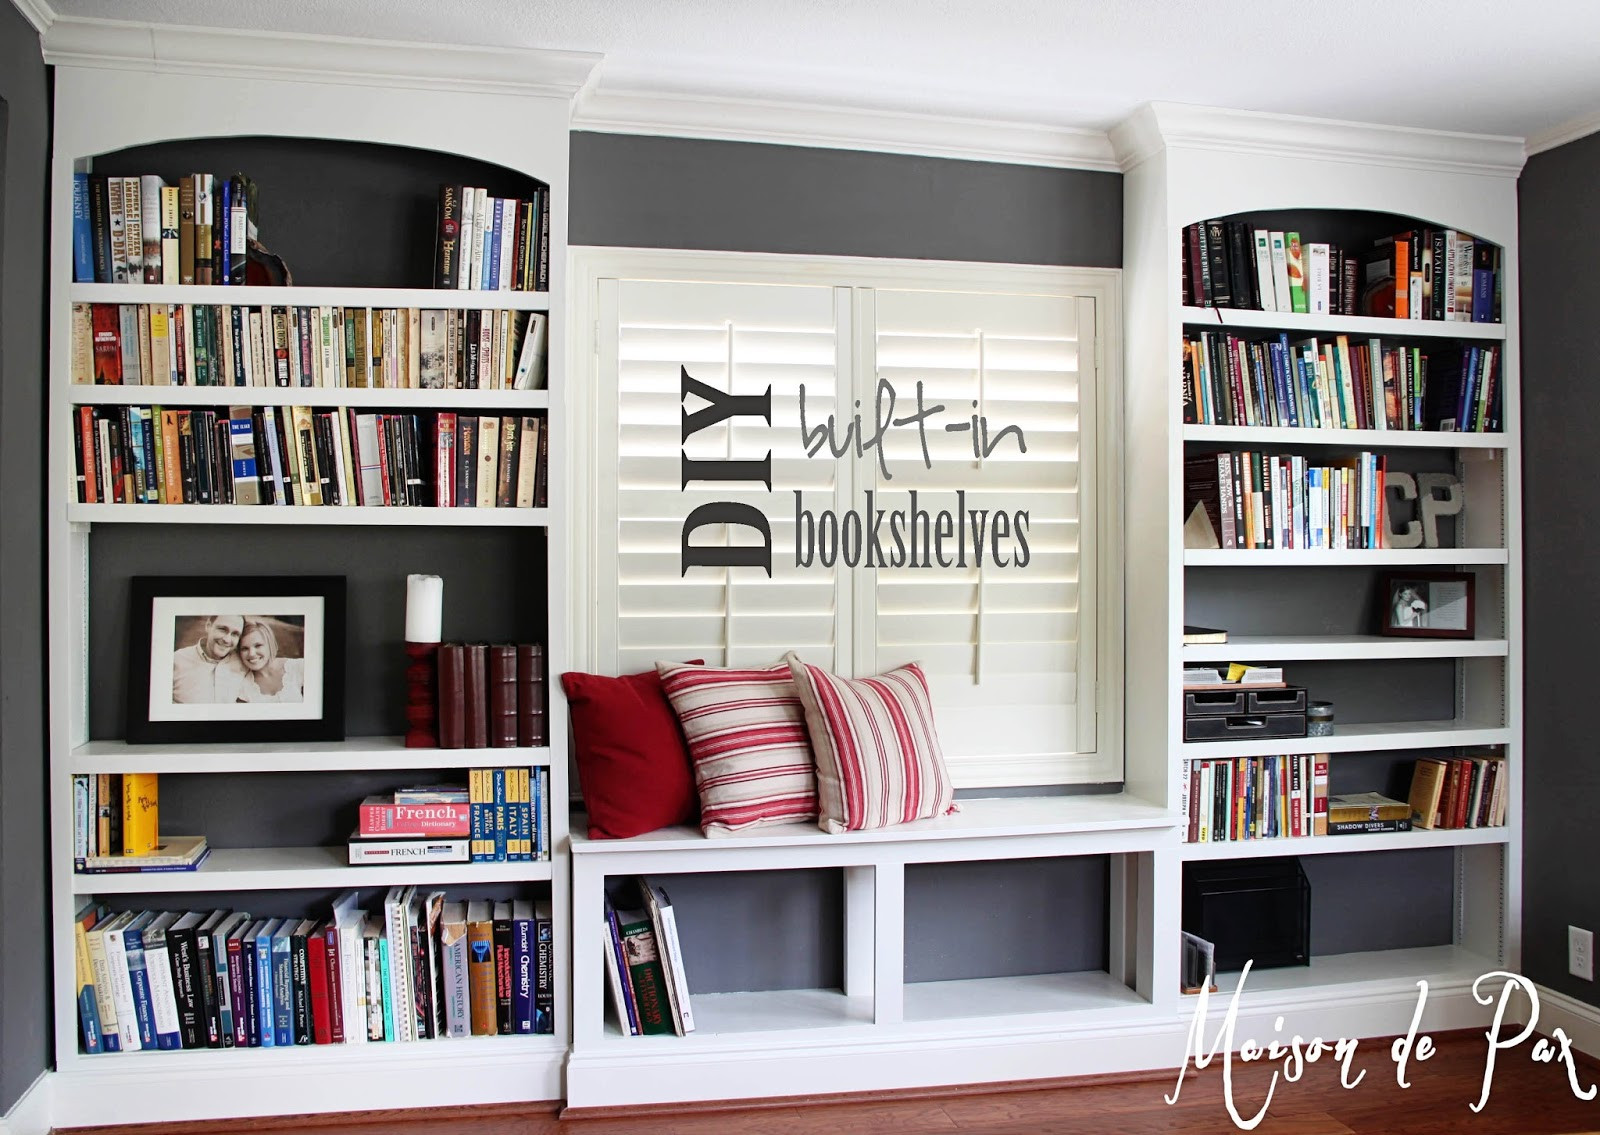 Best ideas about DIY Built In Shelves
. Save or Pin DIY Built In Bookshelves Maison de Pax Now.